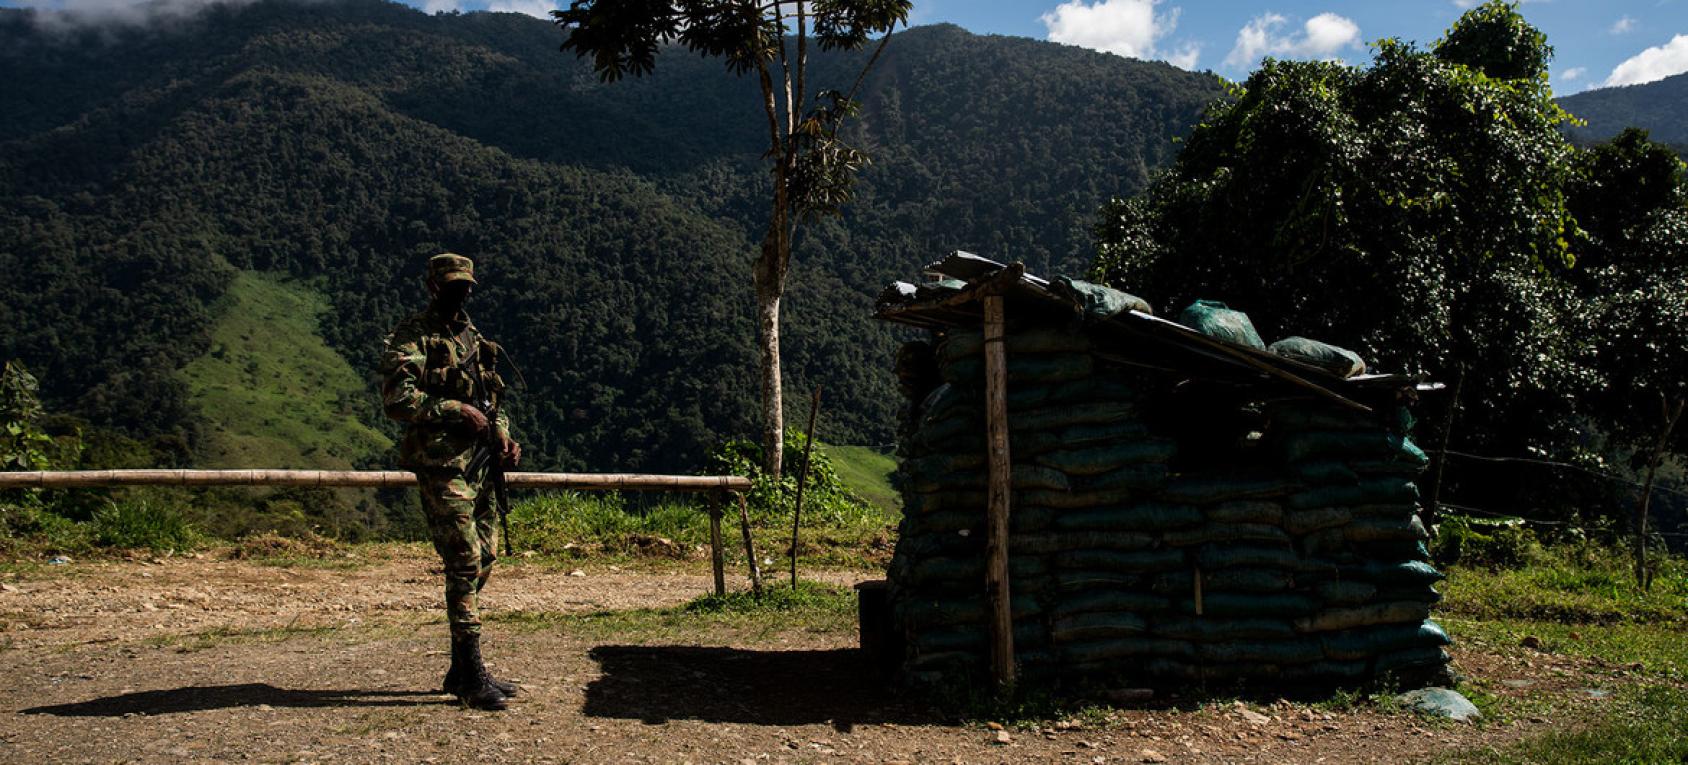 جندي يحمل سلاحًا ويقف خارج منشأة صغيرة مصنوعة من الخشب.